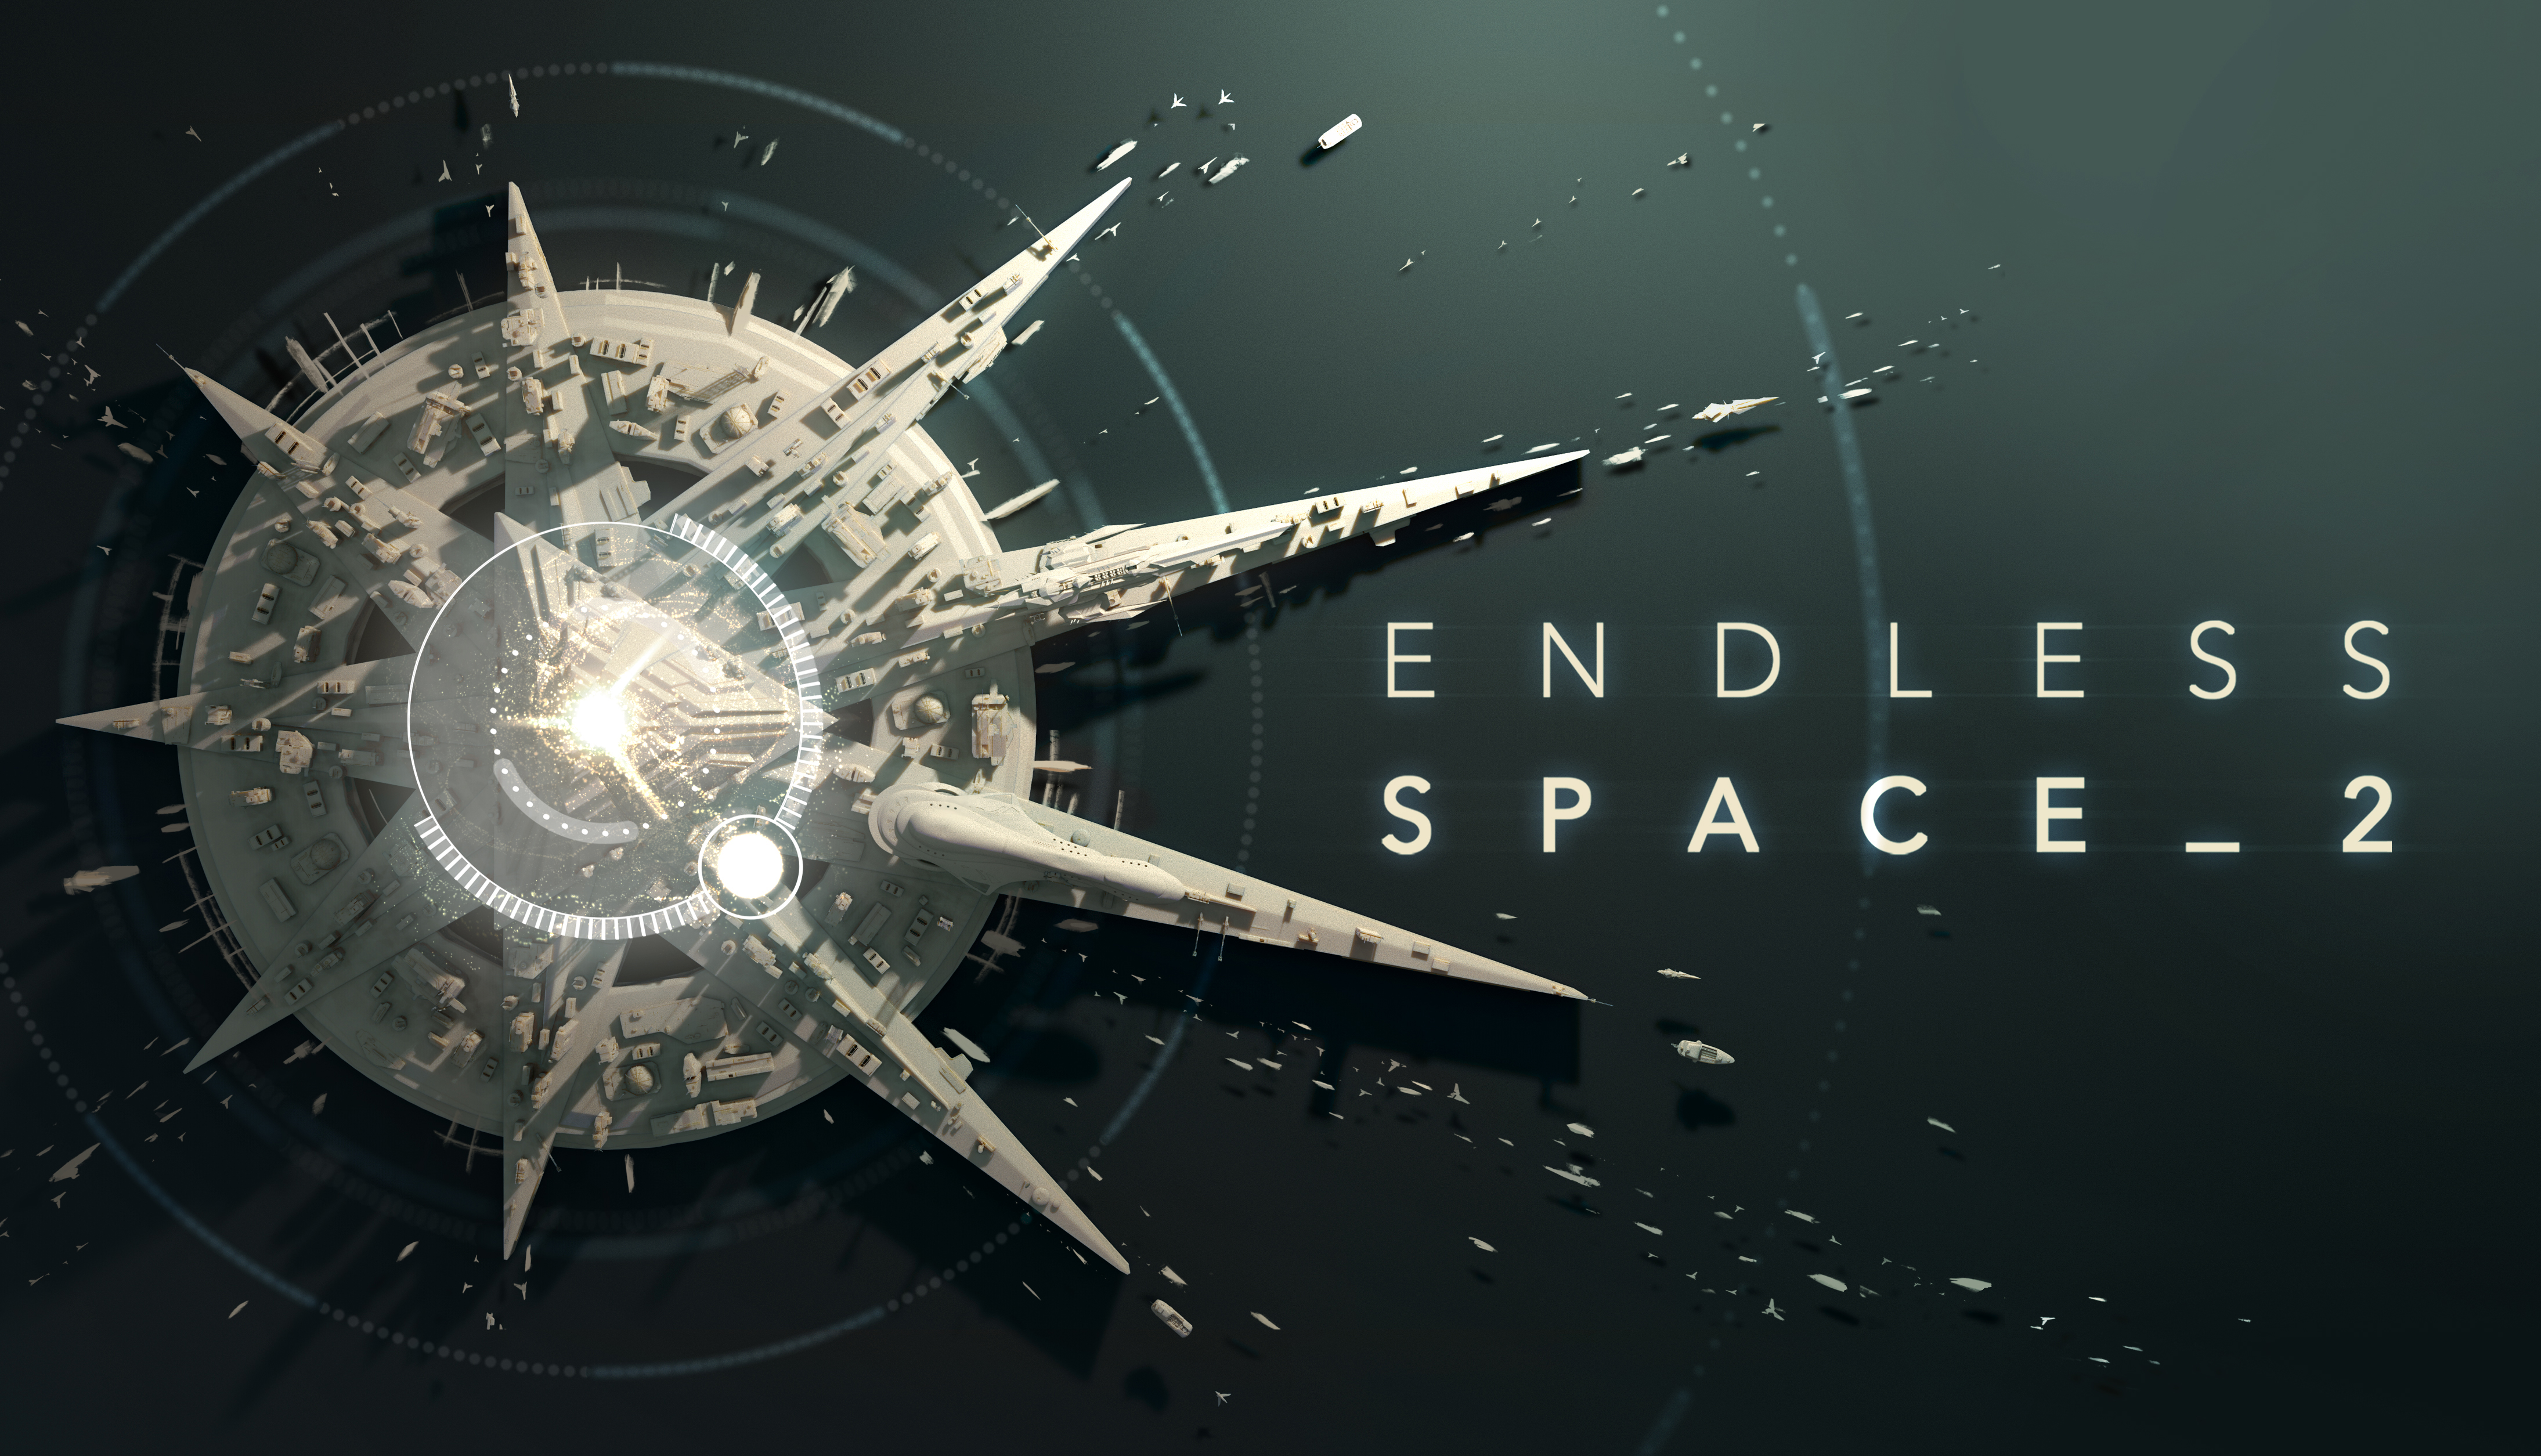 El juego de estrategia 4X Endless Space 2 ya disponible en acceso anticipado en Steam con un 25% de descuento